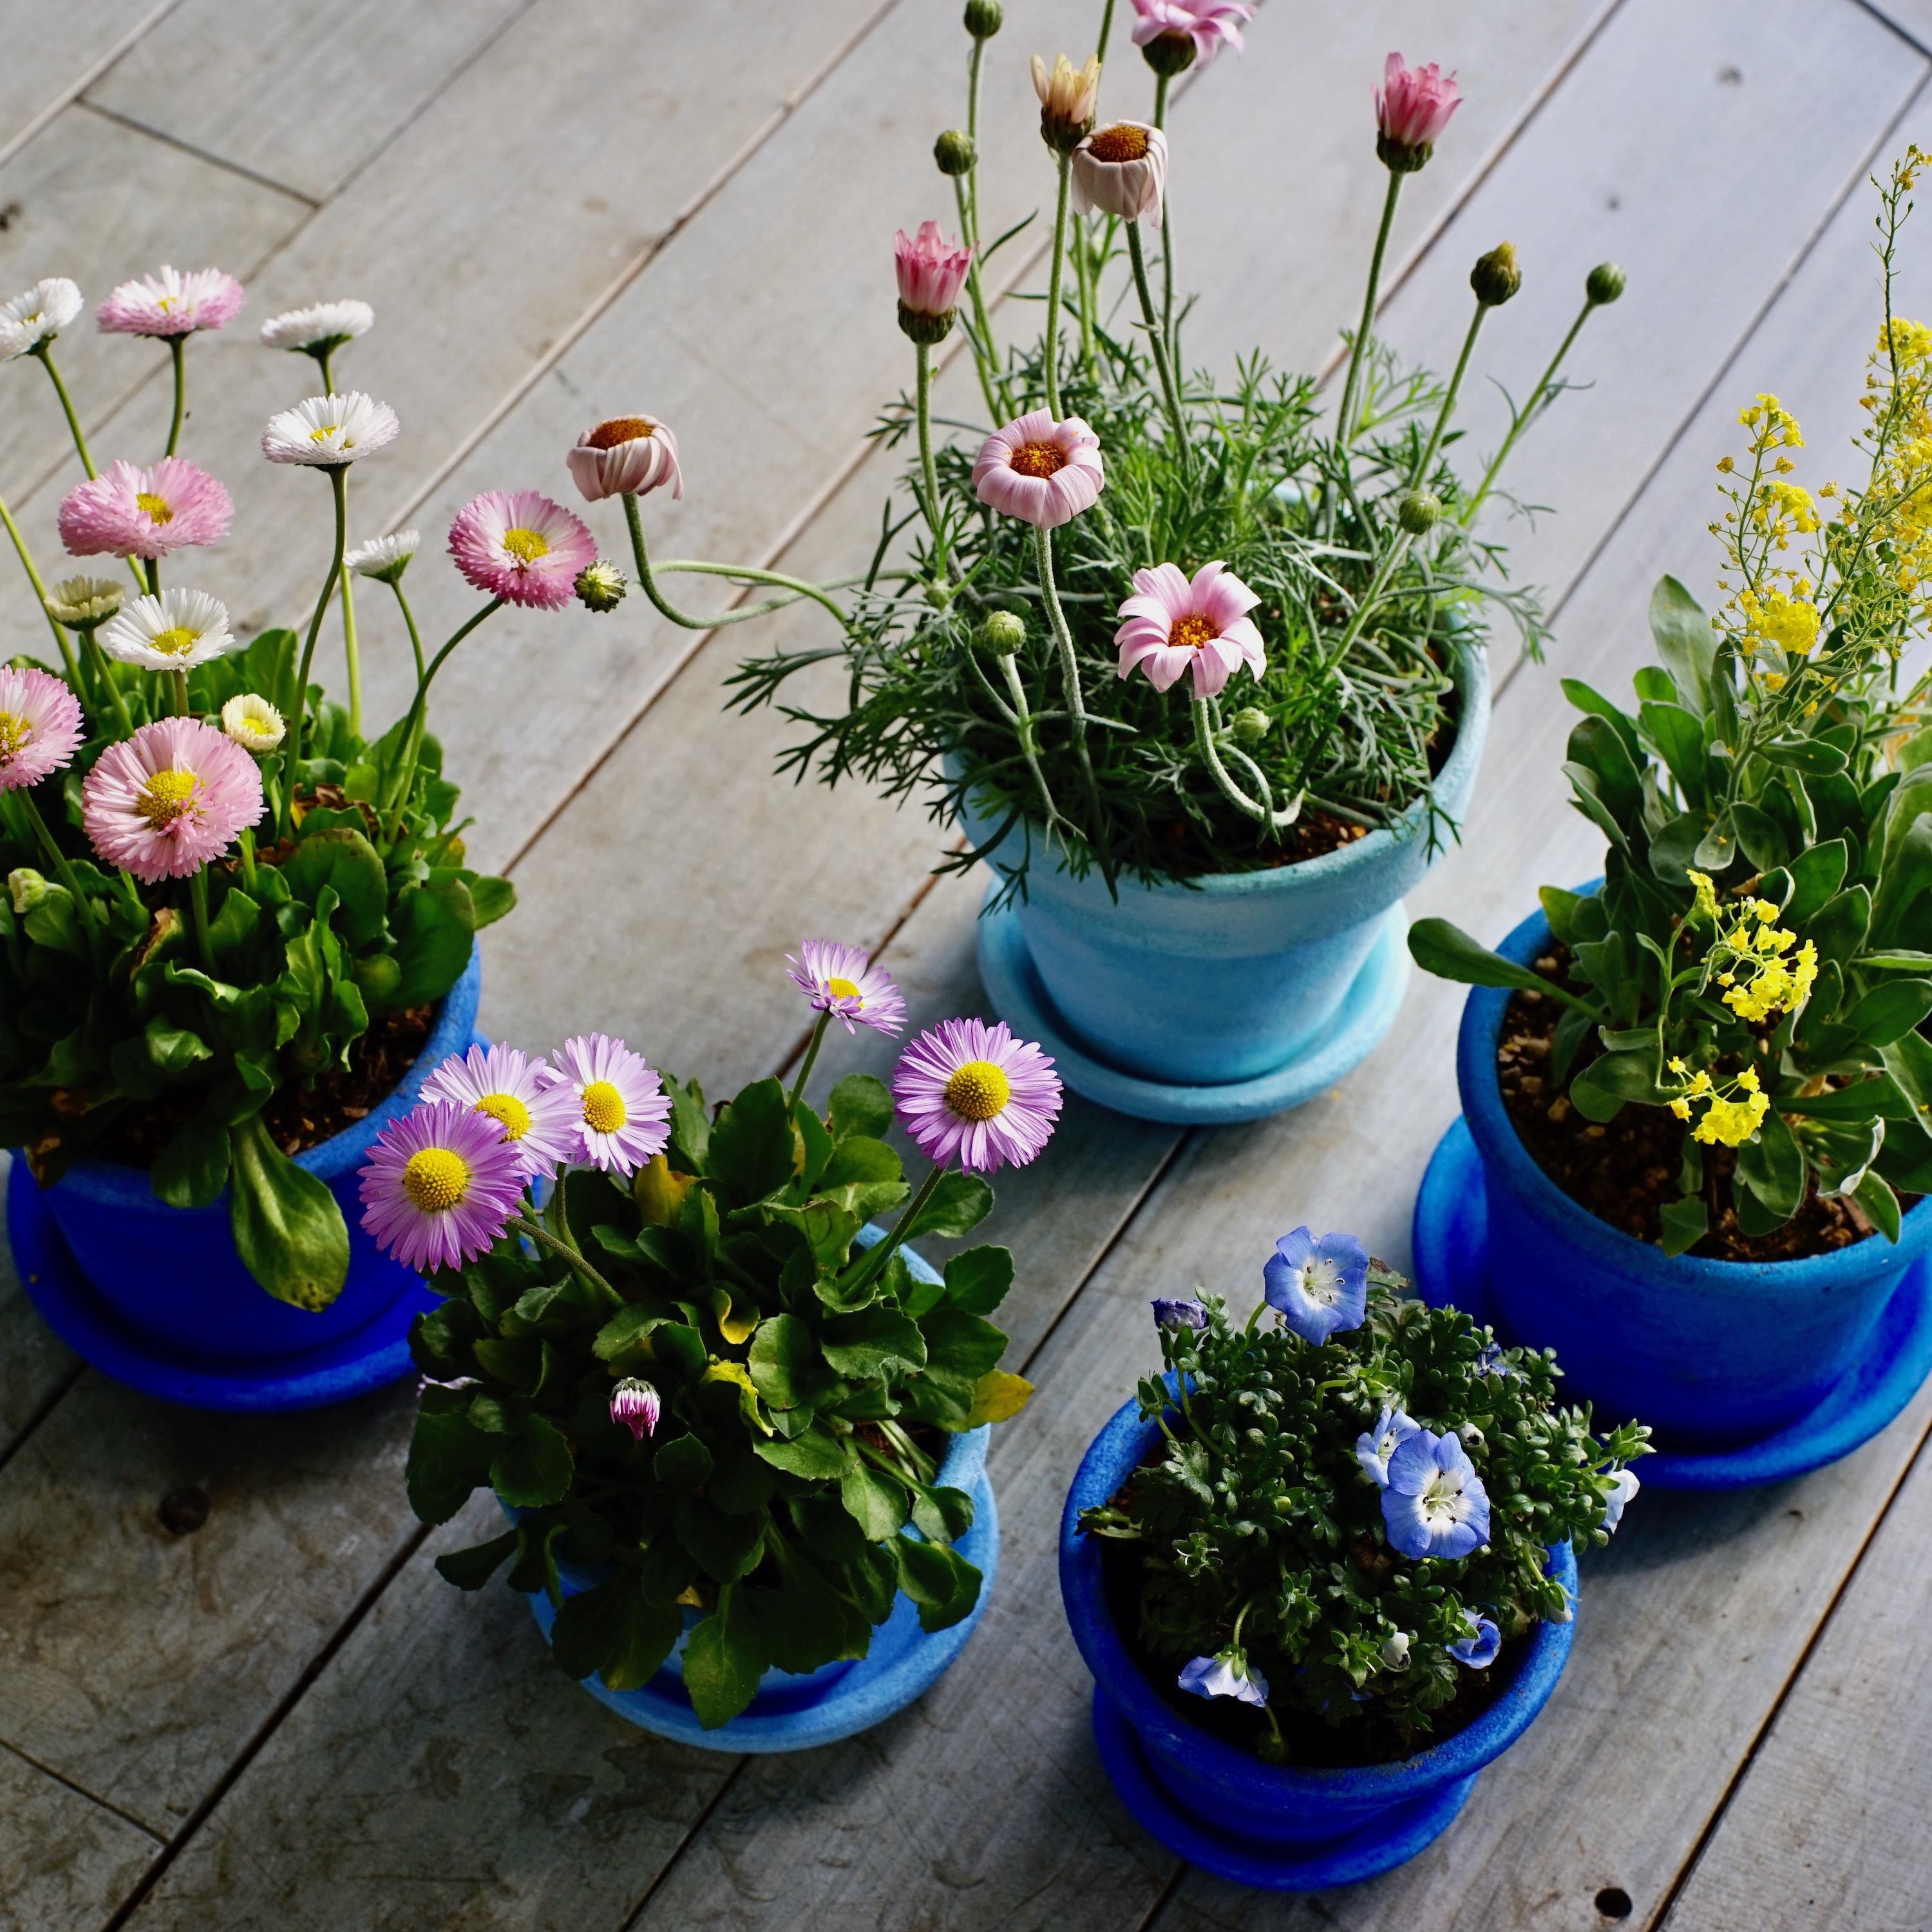 春色の植木鉢で、お部屋に花を咲かせましょう